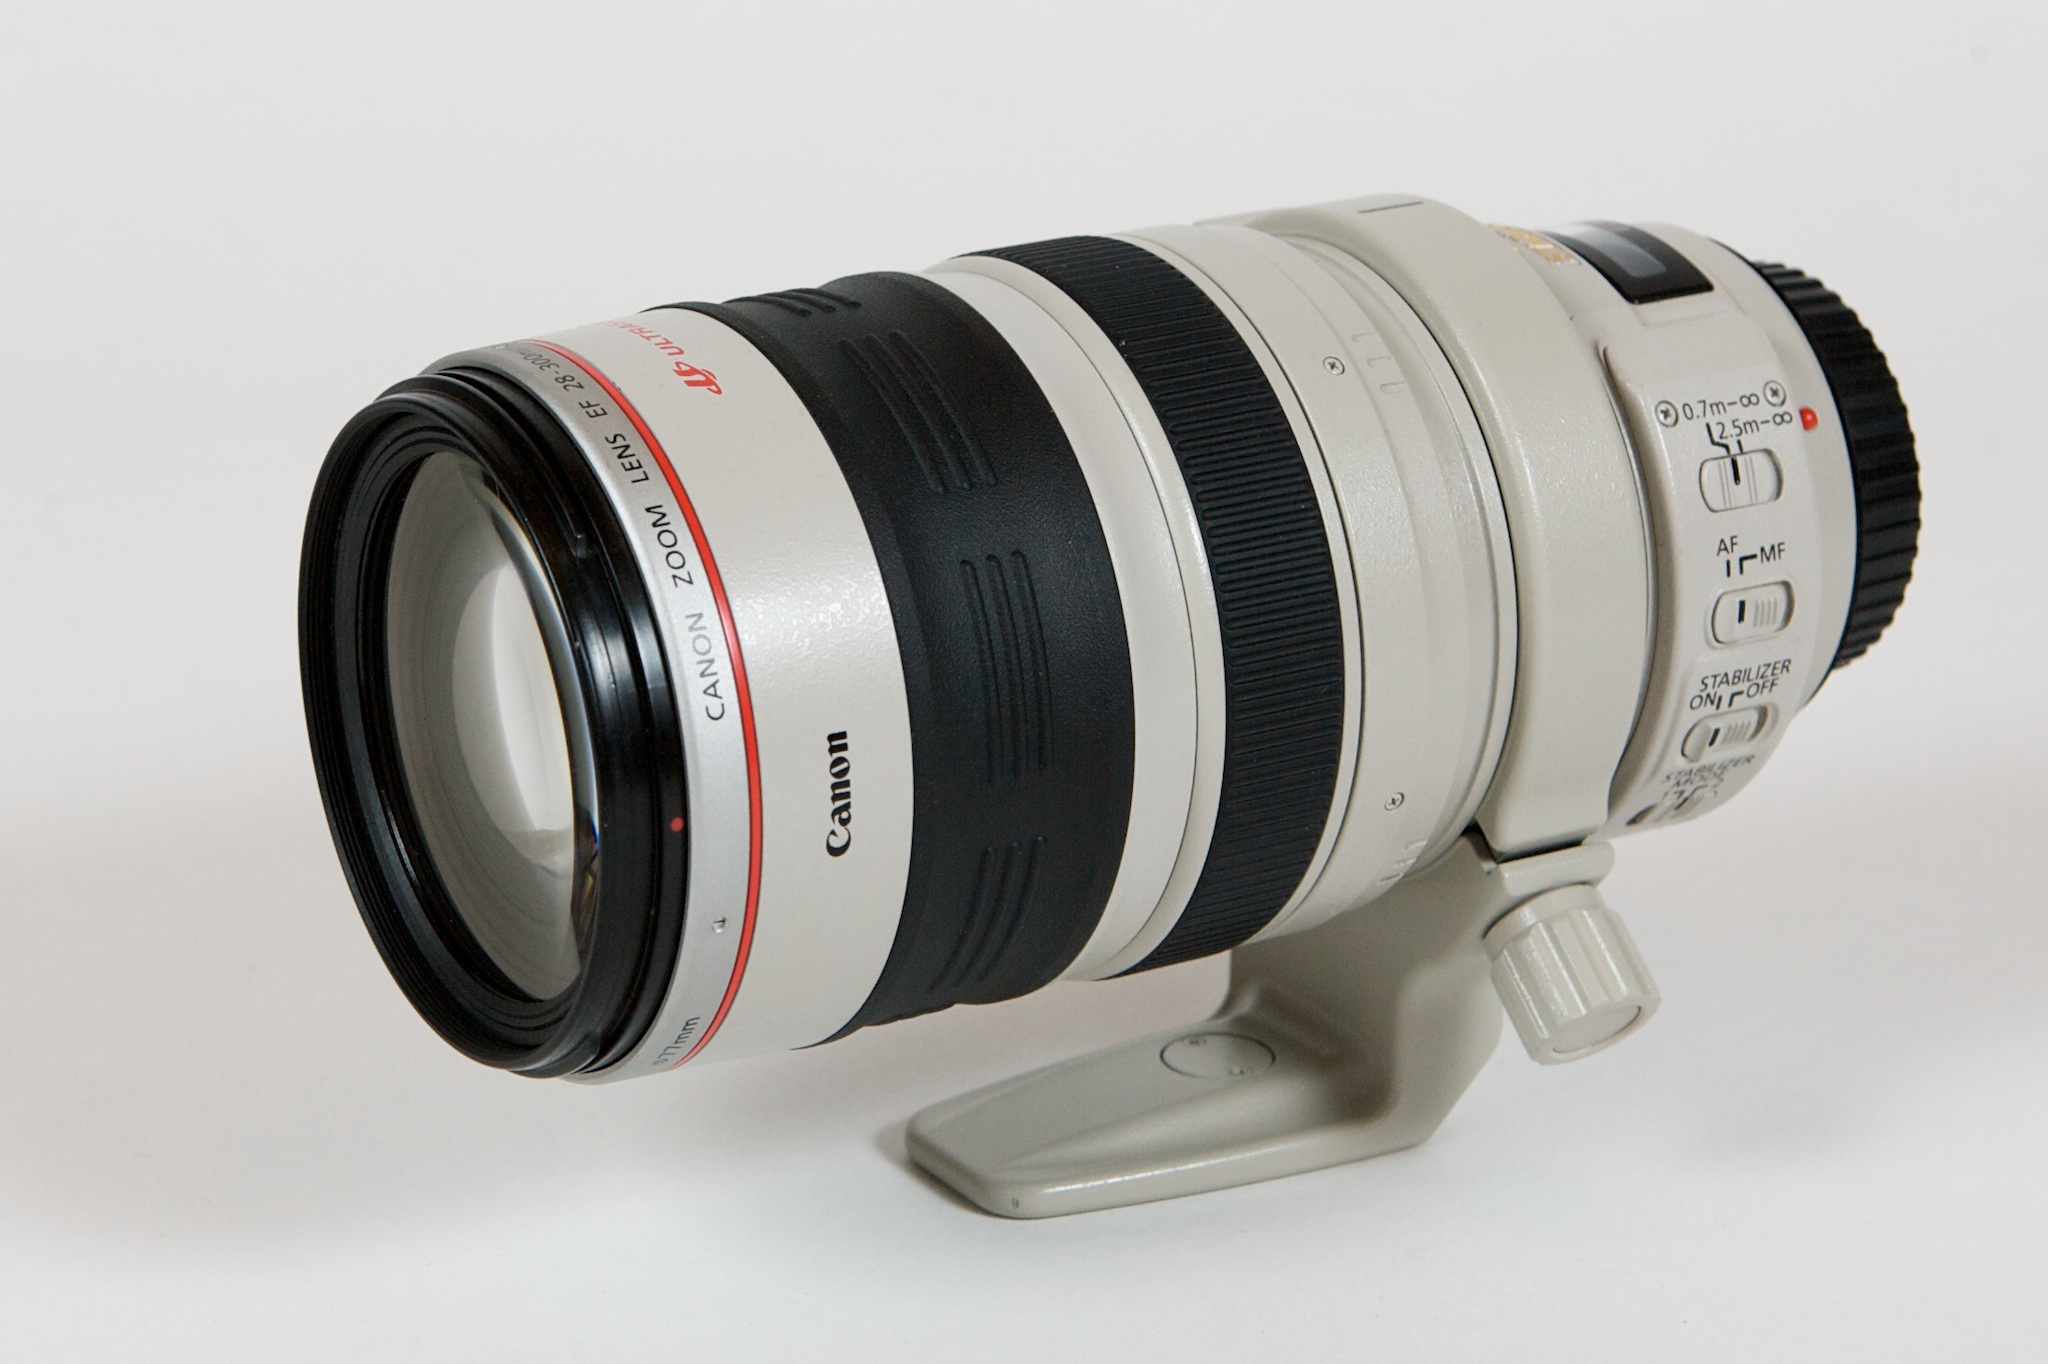 Geruïneerd calorie overschot Canon EF 28-300mm lens - Wikipedia